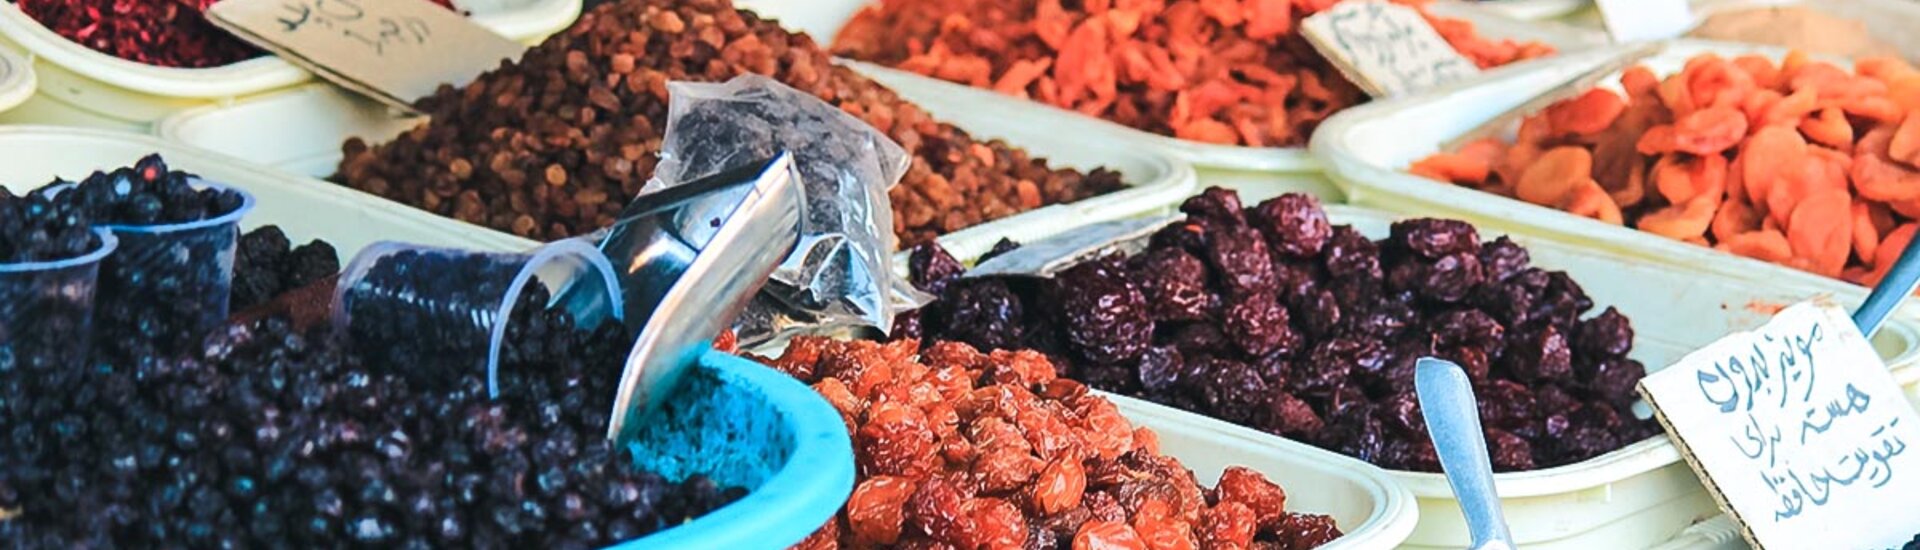 Trockenfrüchte auf dem Bazar von Tabriz